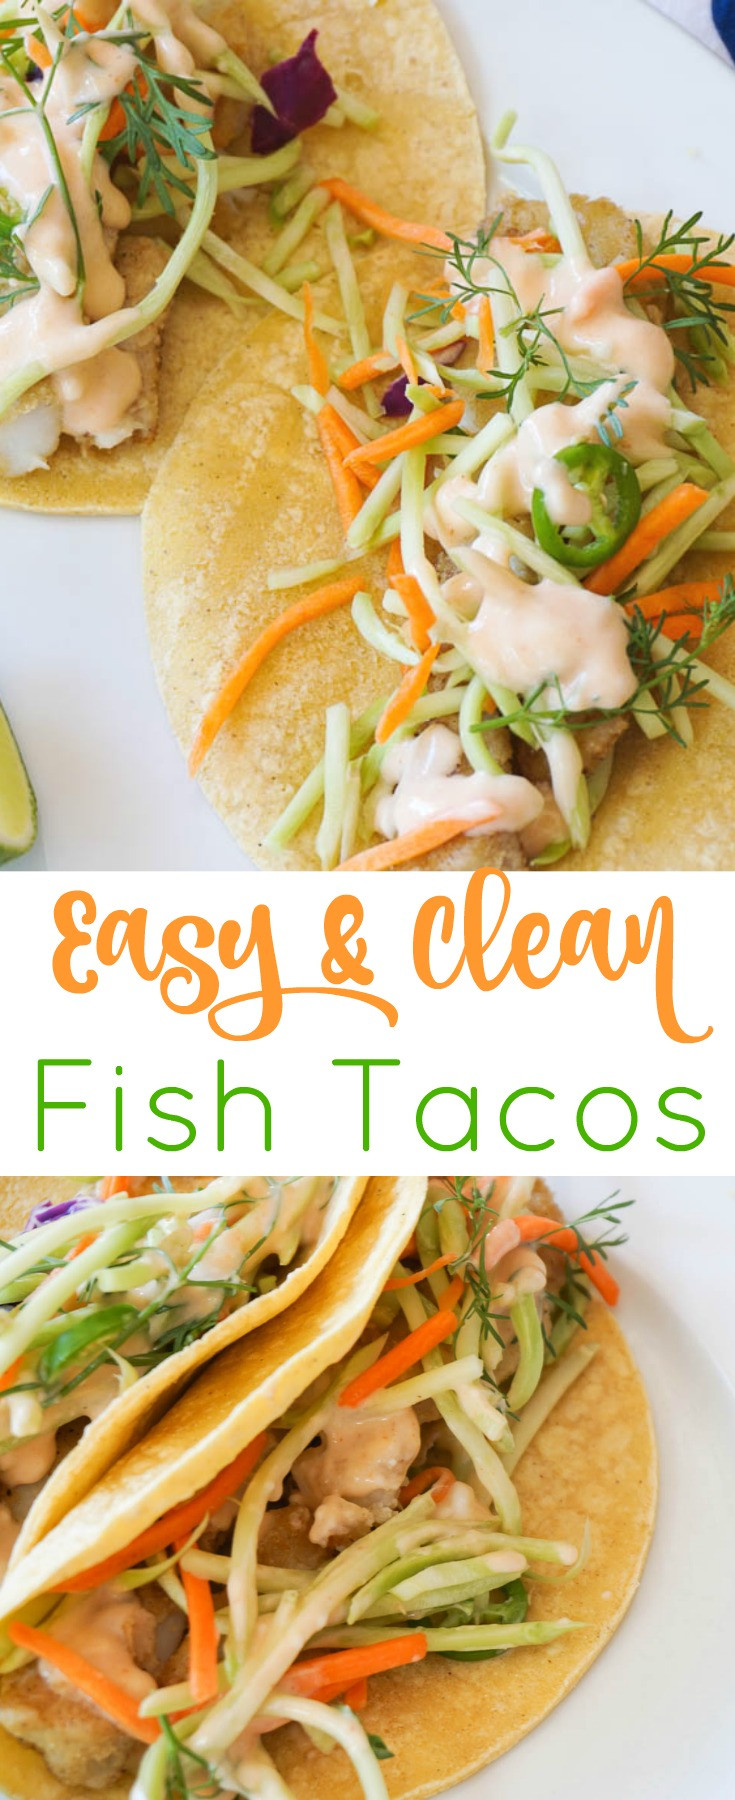 Easy Fish Taco Recipes
 Easy Fish Tacos